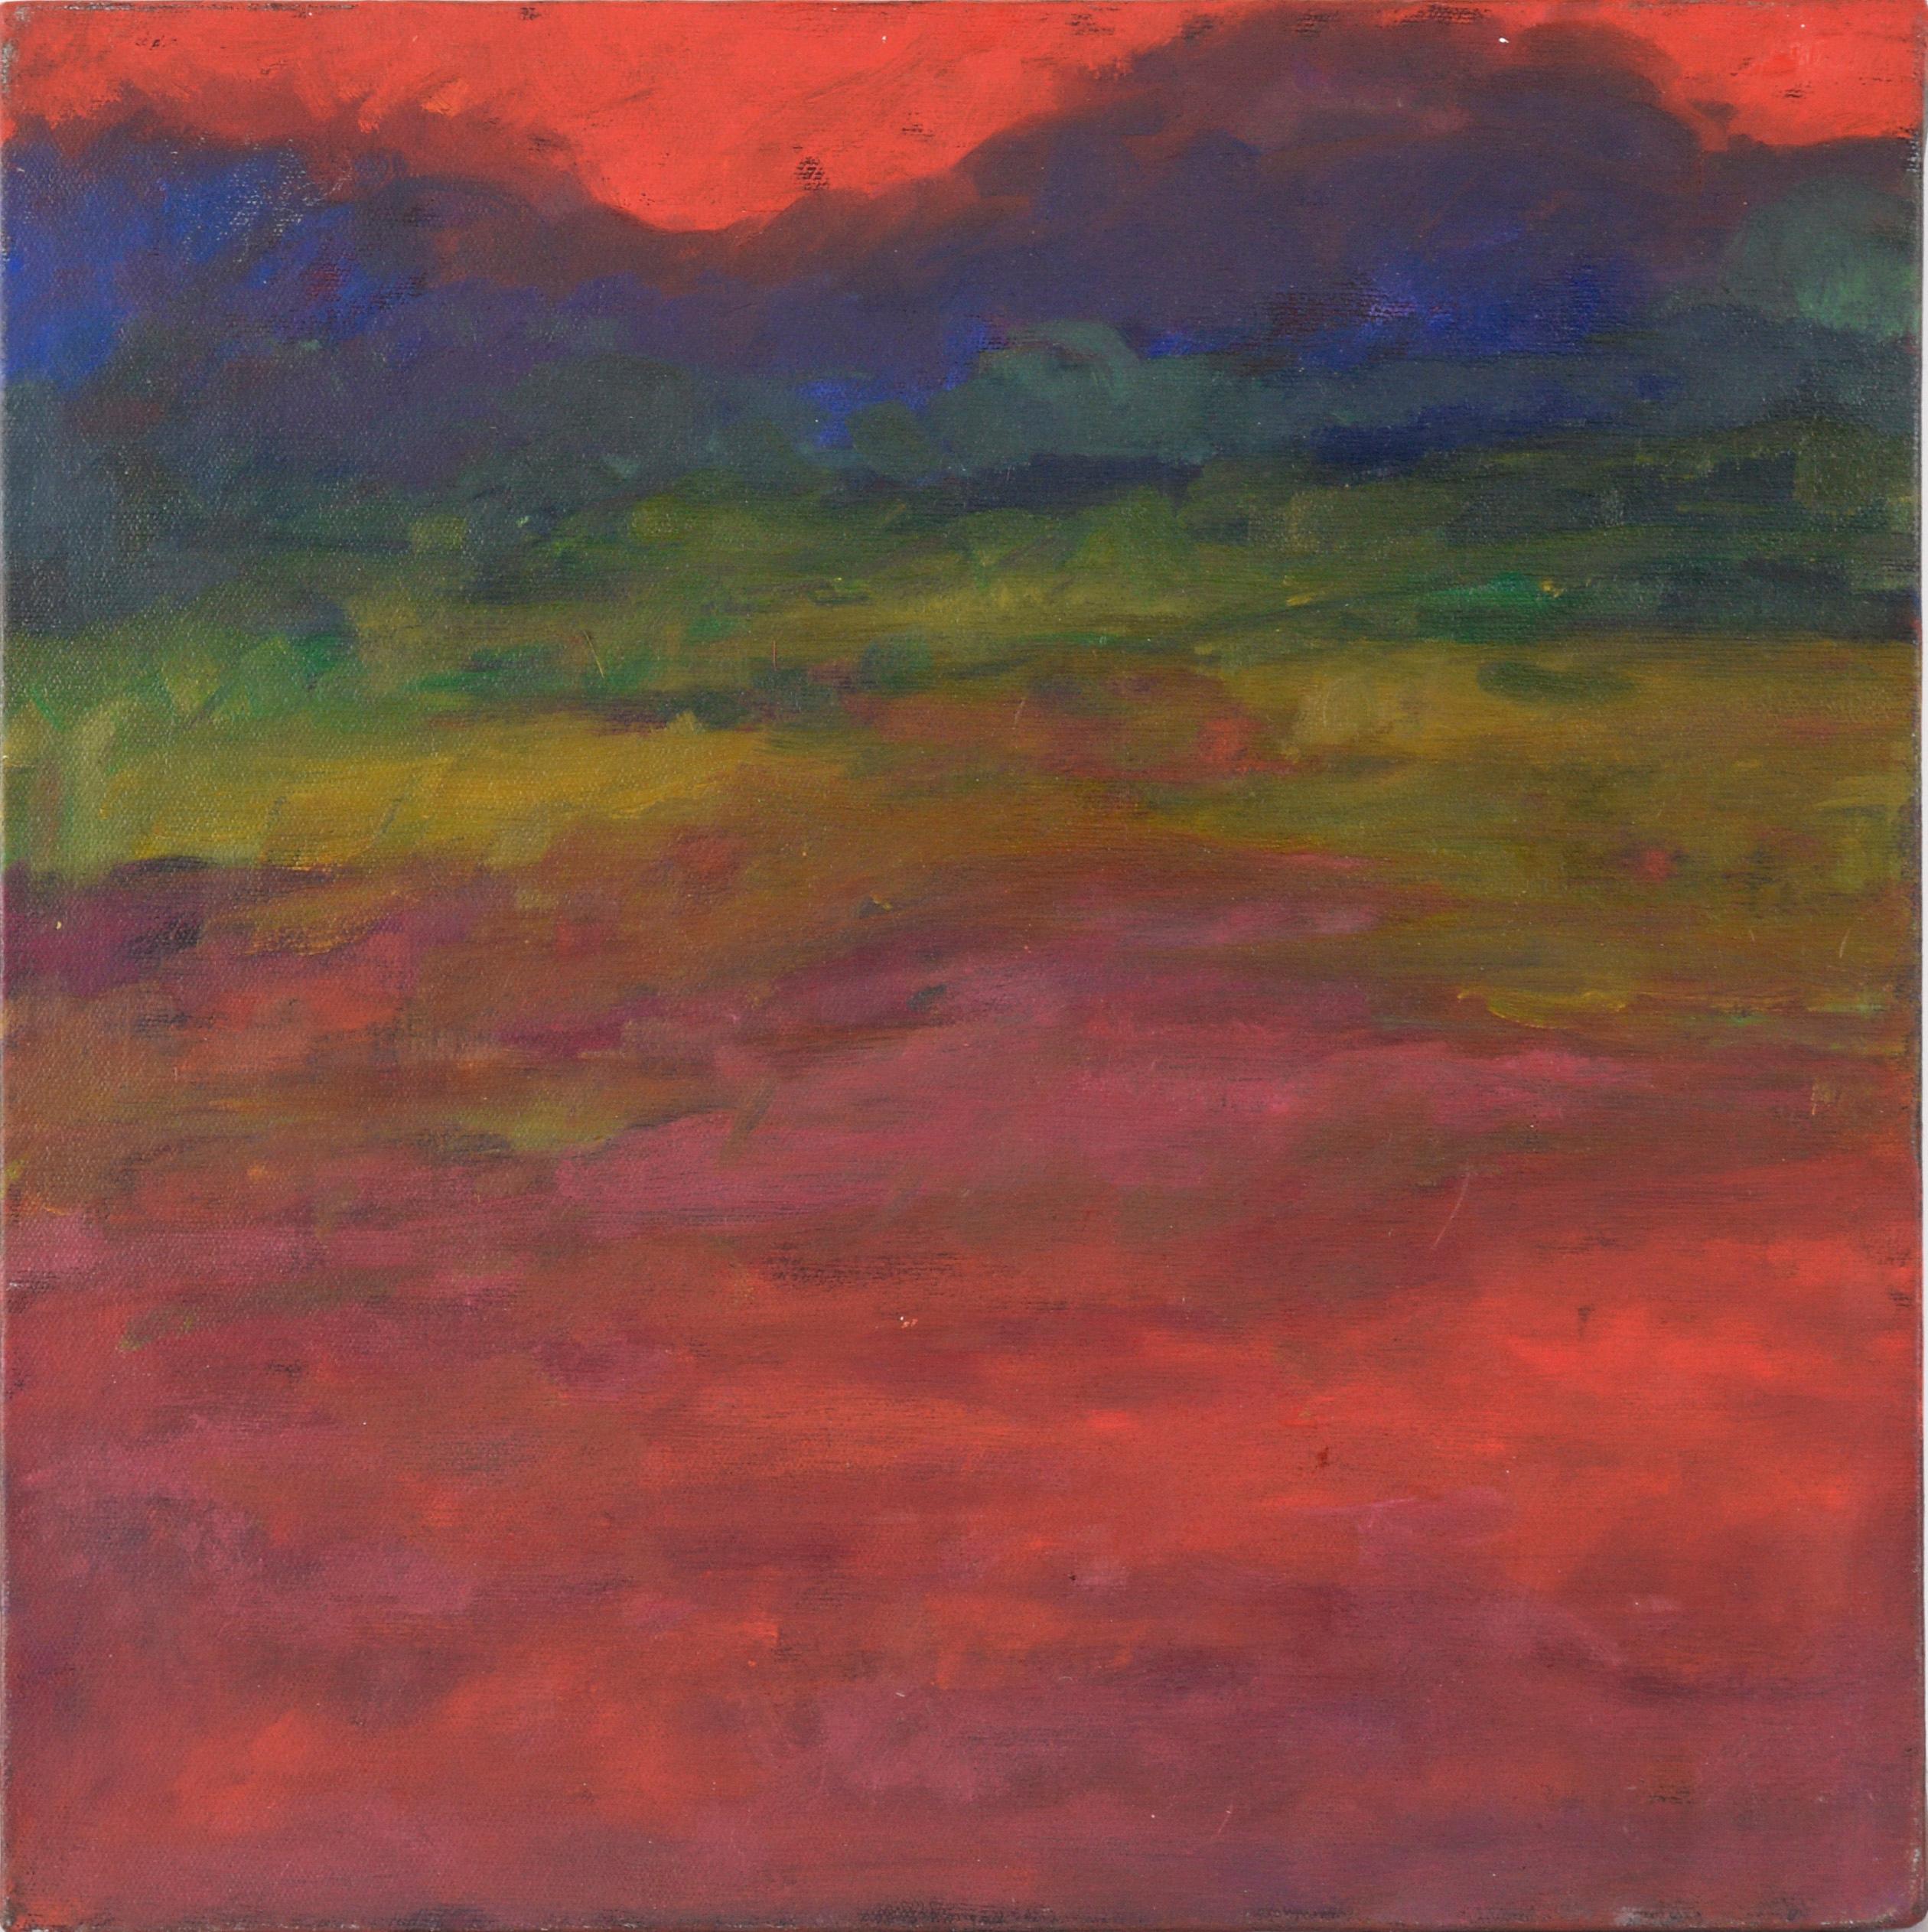 Tramonto rosso splendente - Paesaggio astratto in acrilico su tela